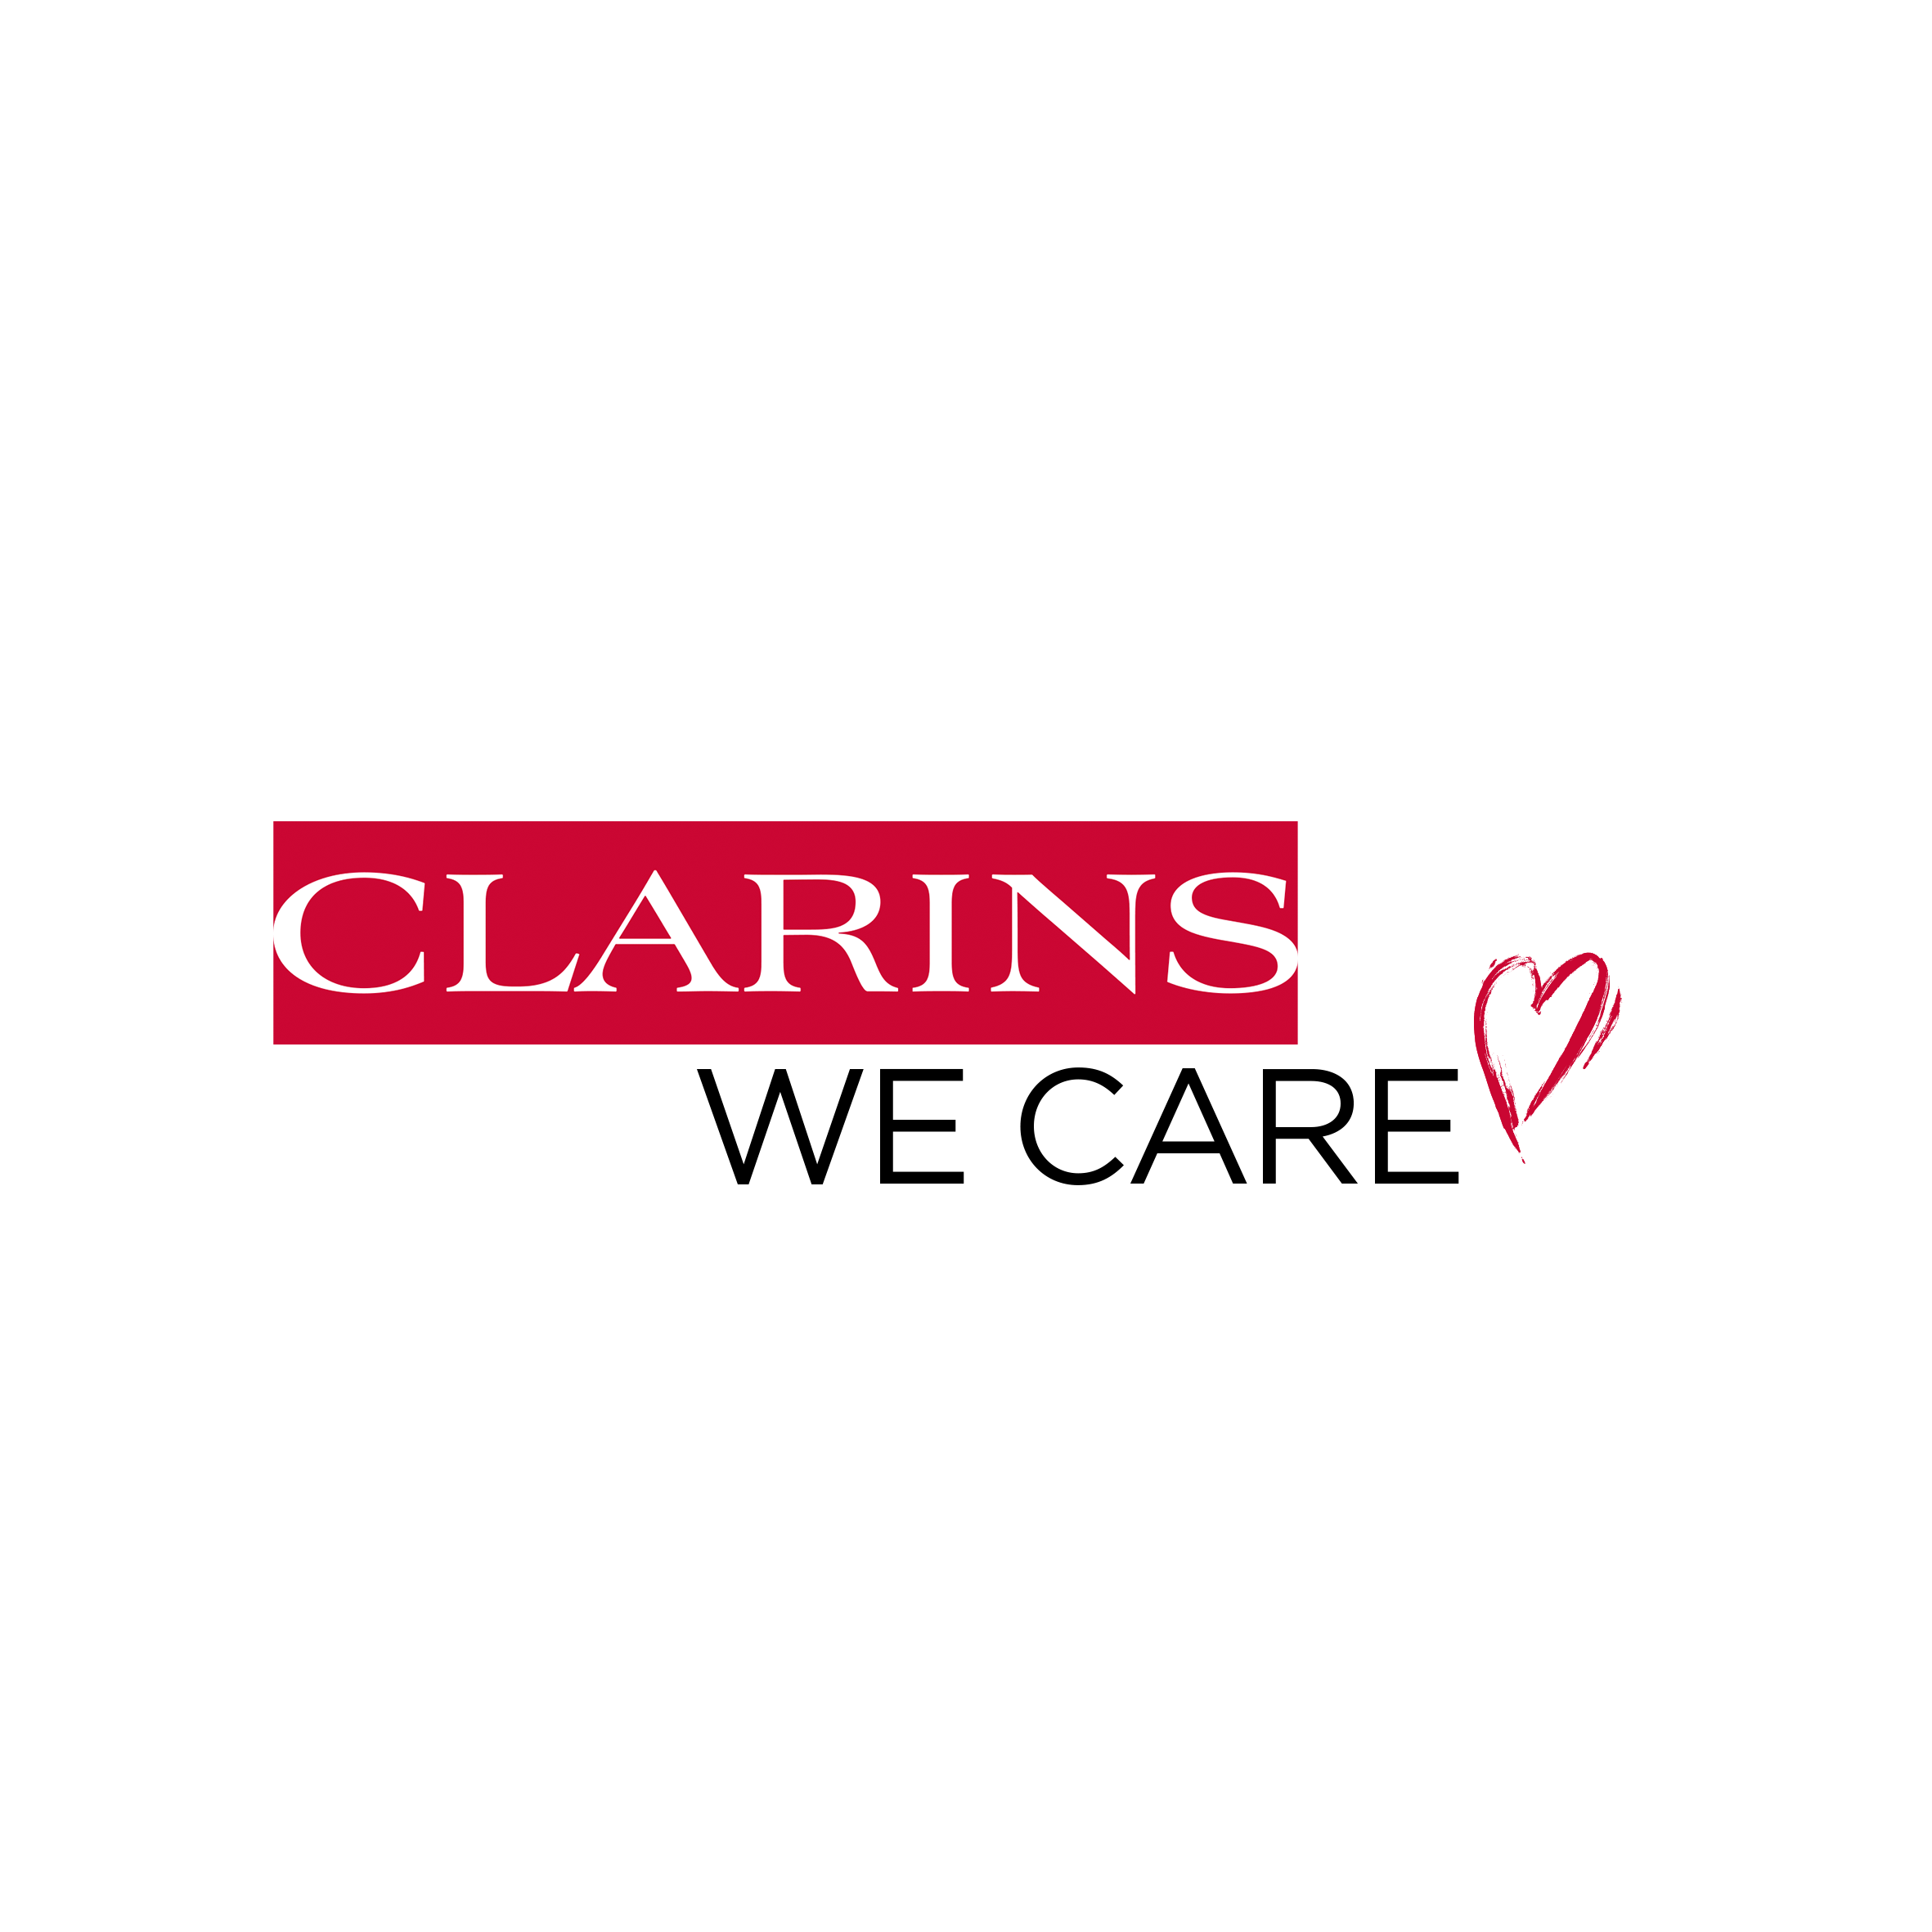 クレーム マスヴェルト | CLARINS®